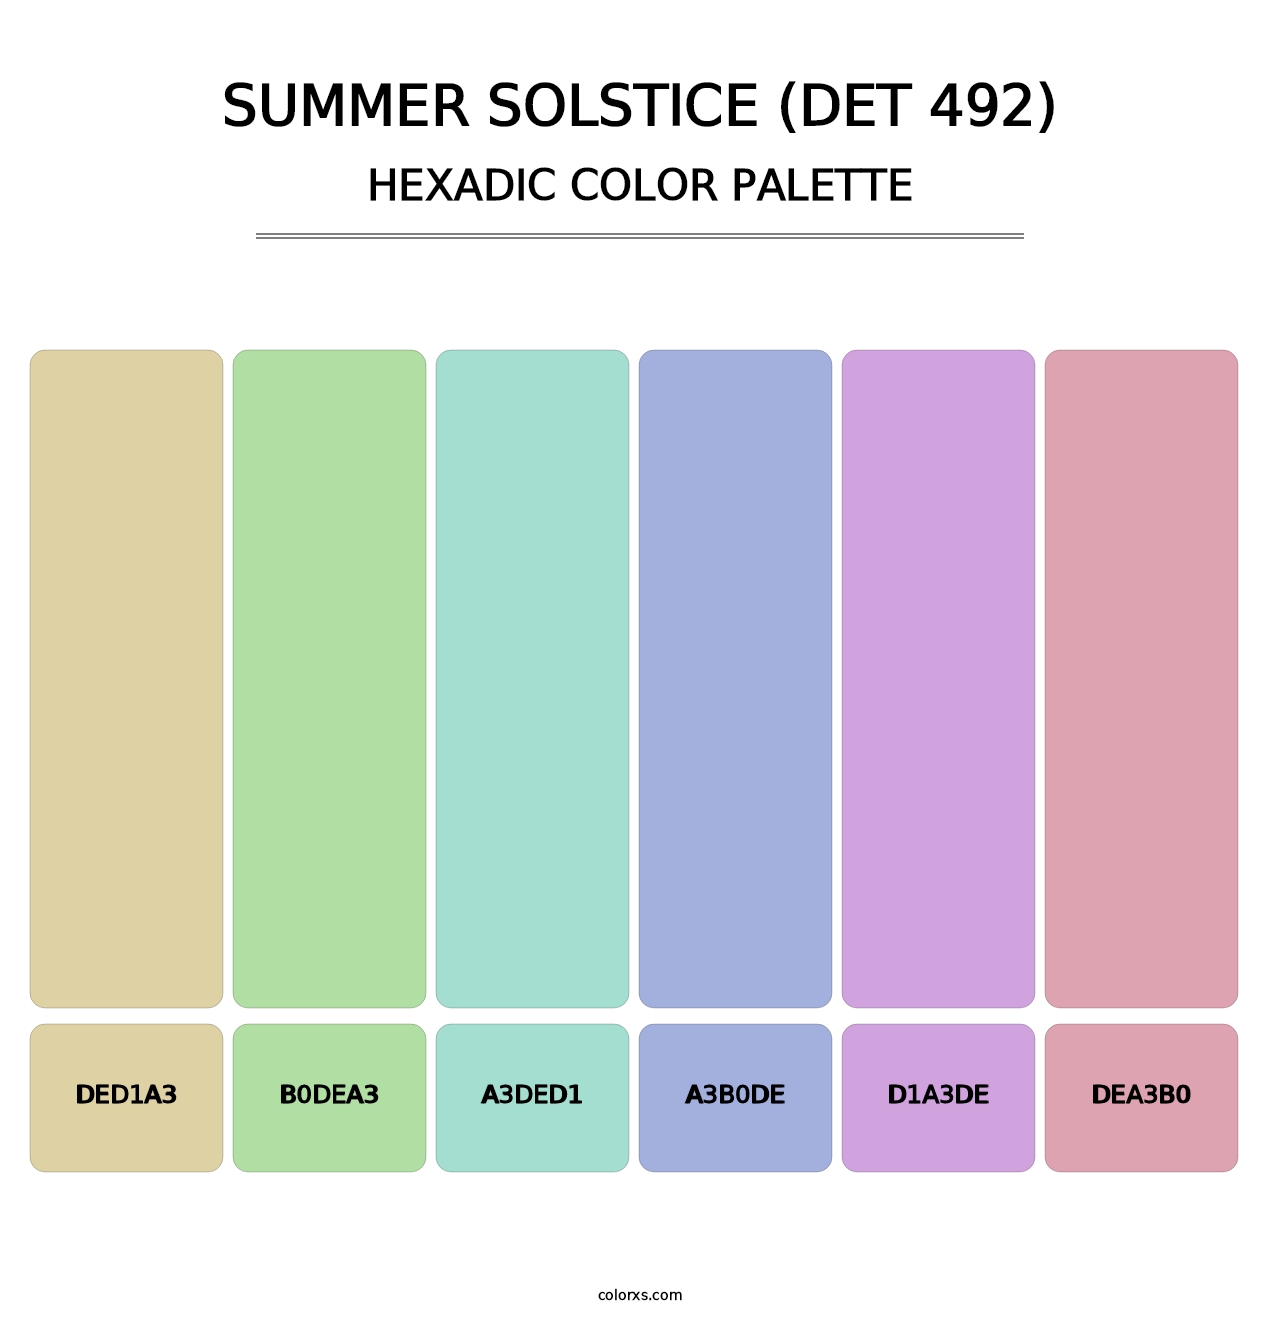 Summer Solstice (DET 492) - Hexadic Color Palette